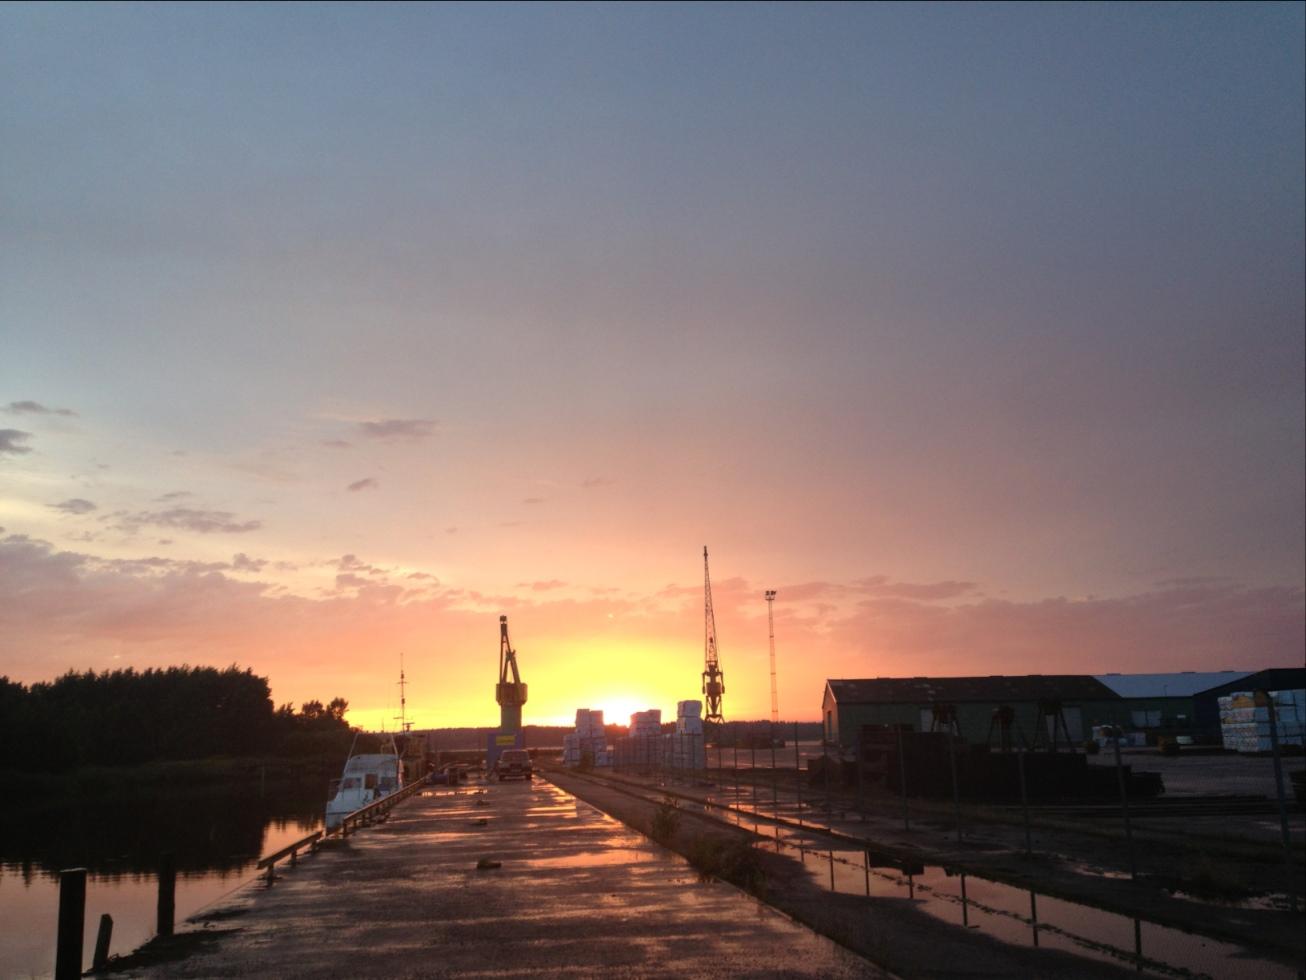 Efter regn kommer sol. Fotot är taget i hamnen Kristinehamn